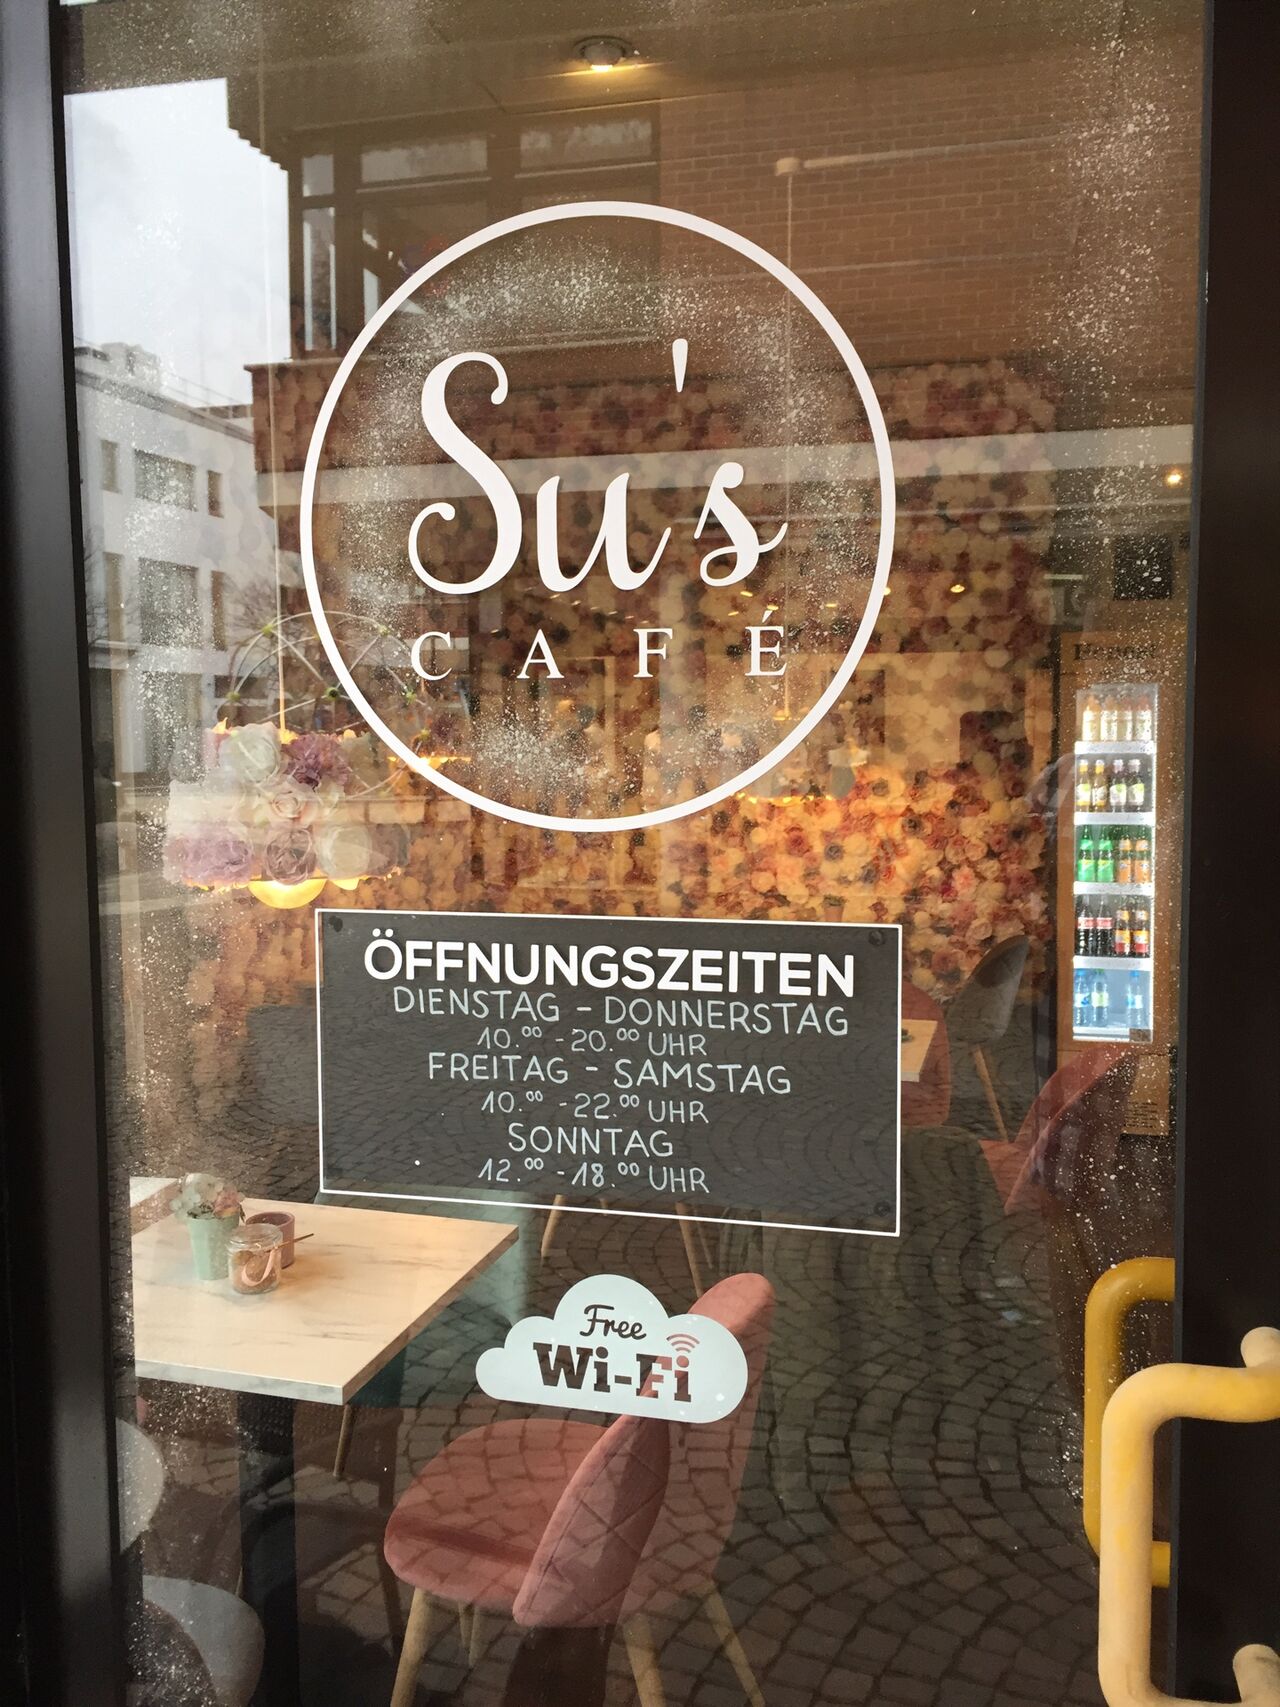 A photo of Su’s Café